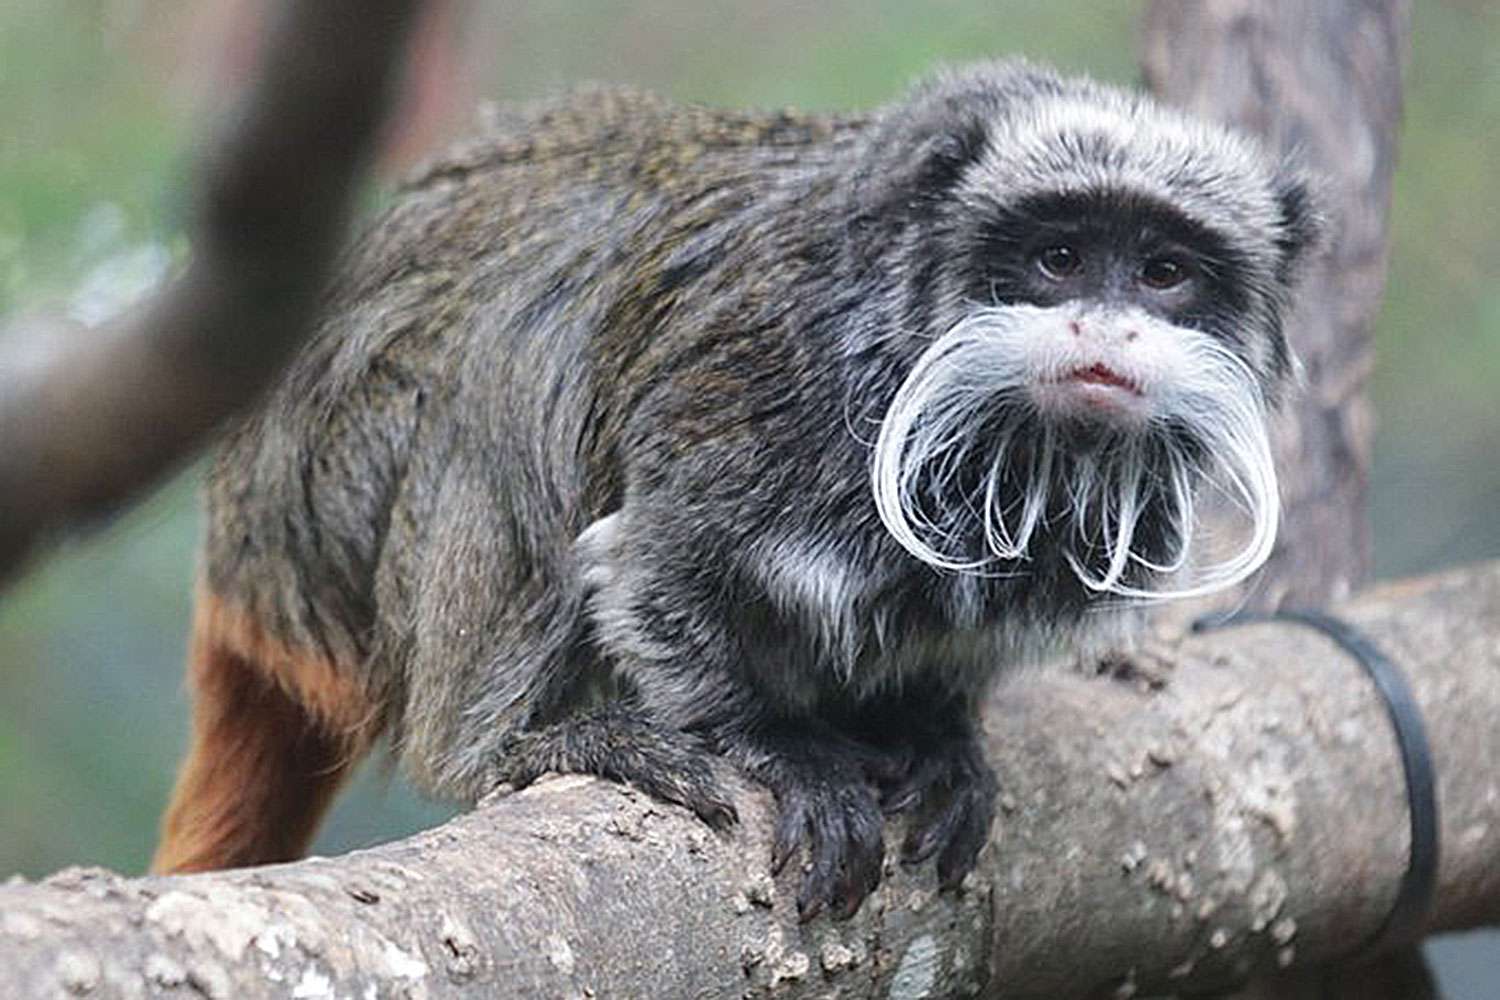 Der Zoo von Dallas meldet das Verschwinden von 2 Tamarin-Affen, nachdem mehrere Tiere verschwunden sind